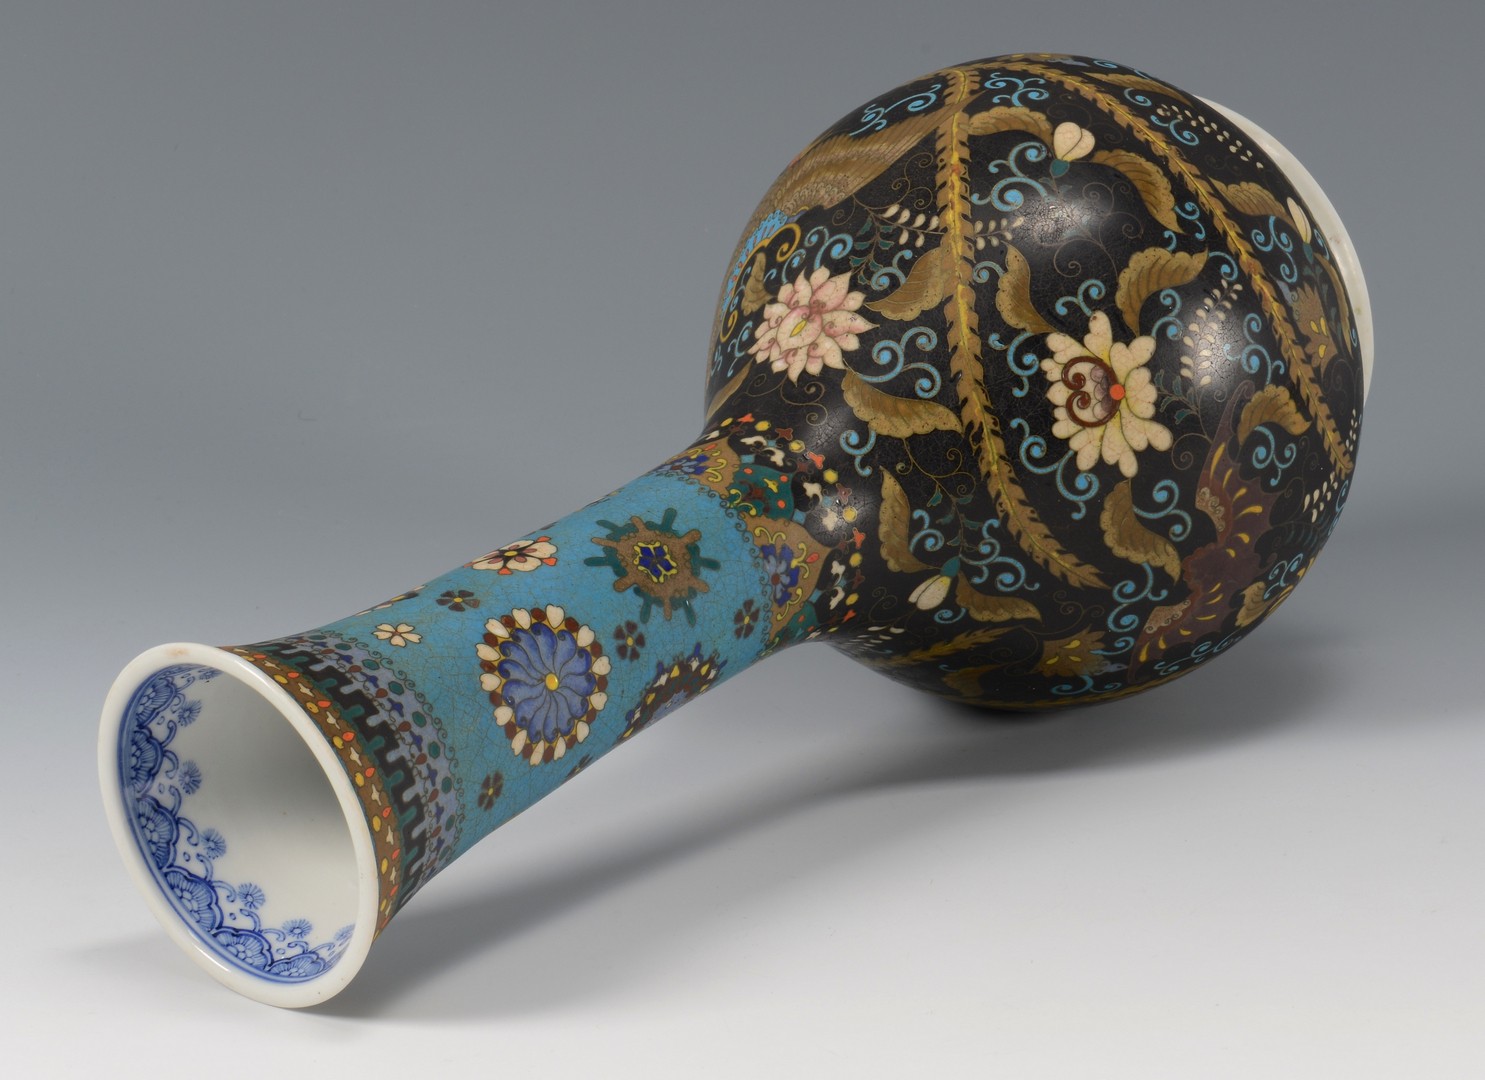 Lot 26: Chinese Porcelain Vase w/ Inlaid Enamel